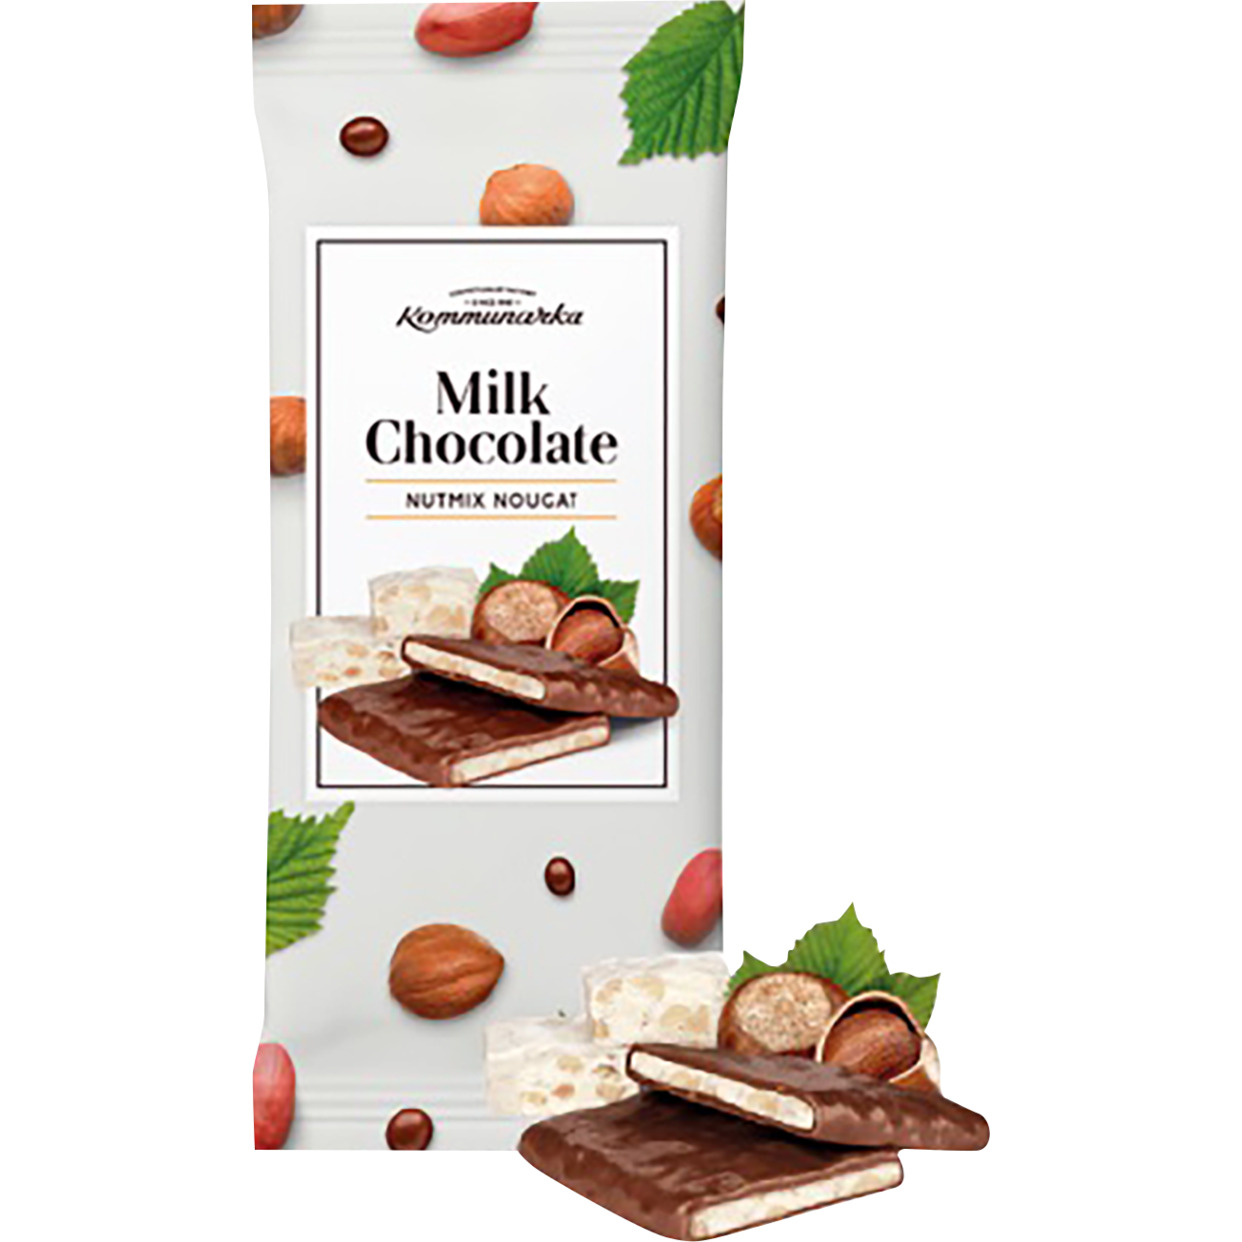 Шоколад молочный с ореховой нугой «Milk Chocolate nutmix nougat» 80гр